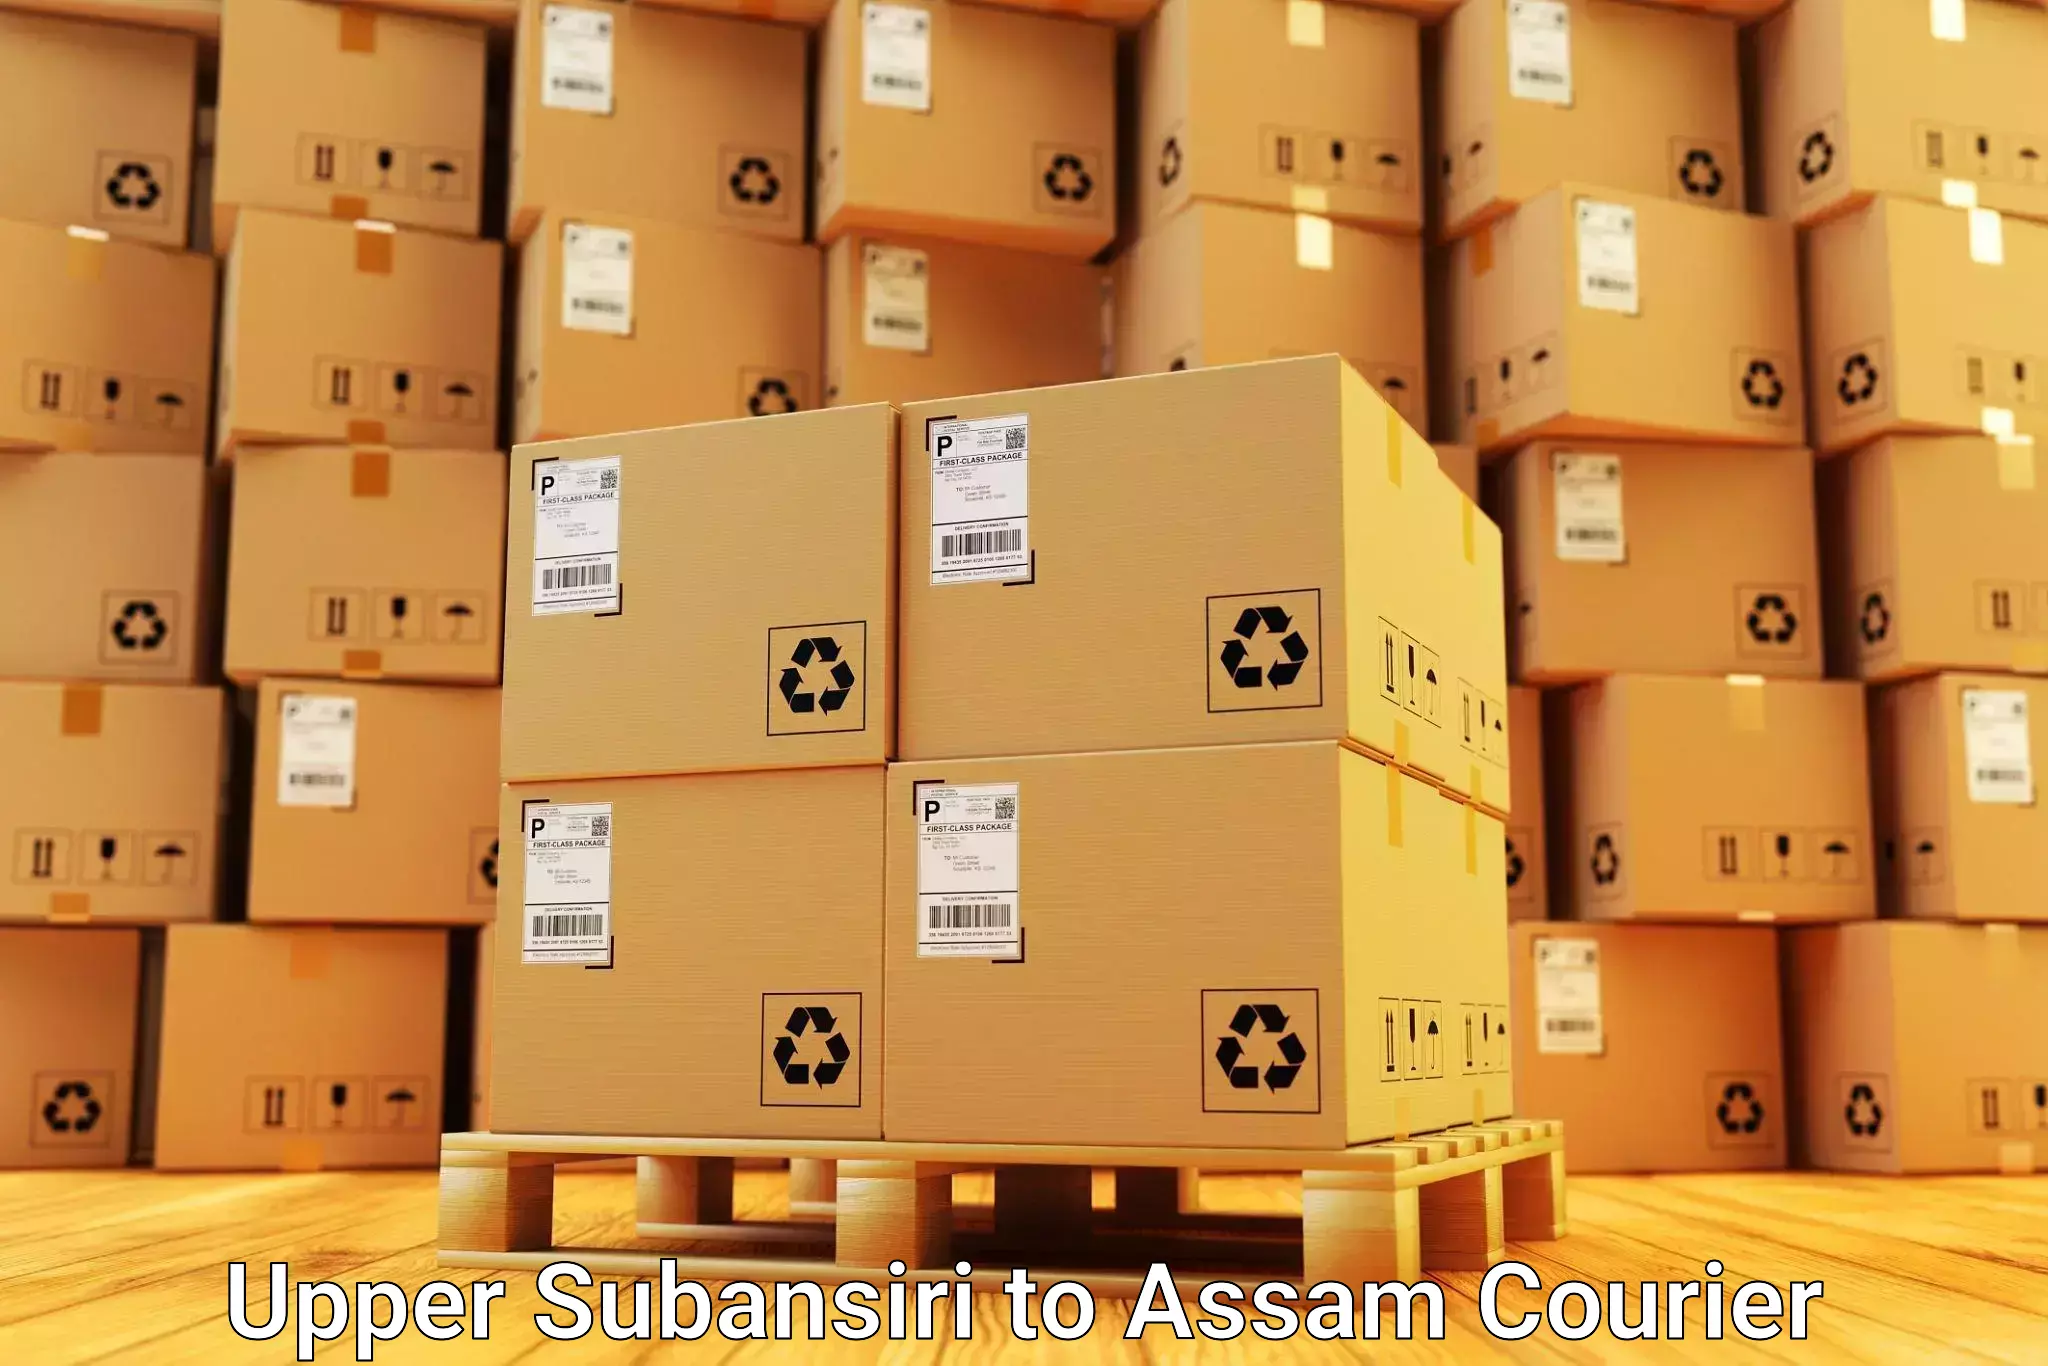 Efficient moving services Upper Subansiri to Mayang